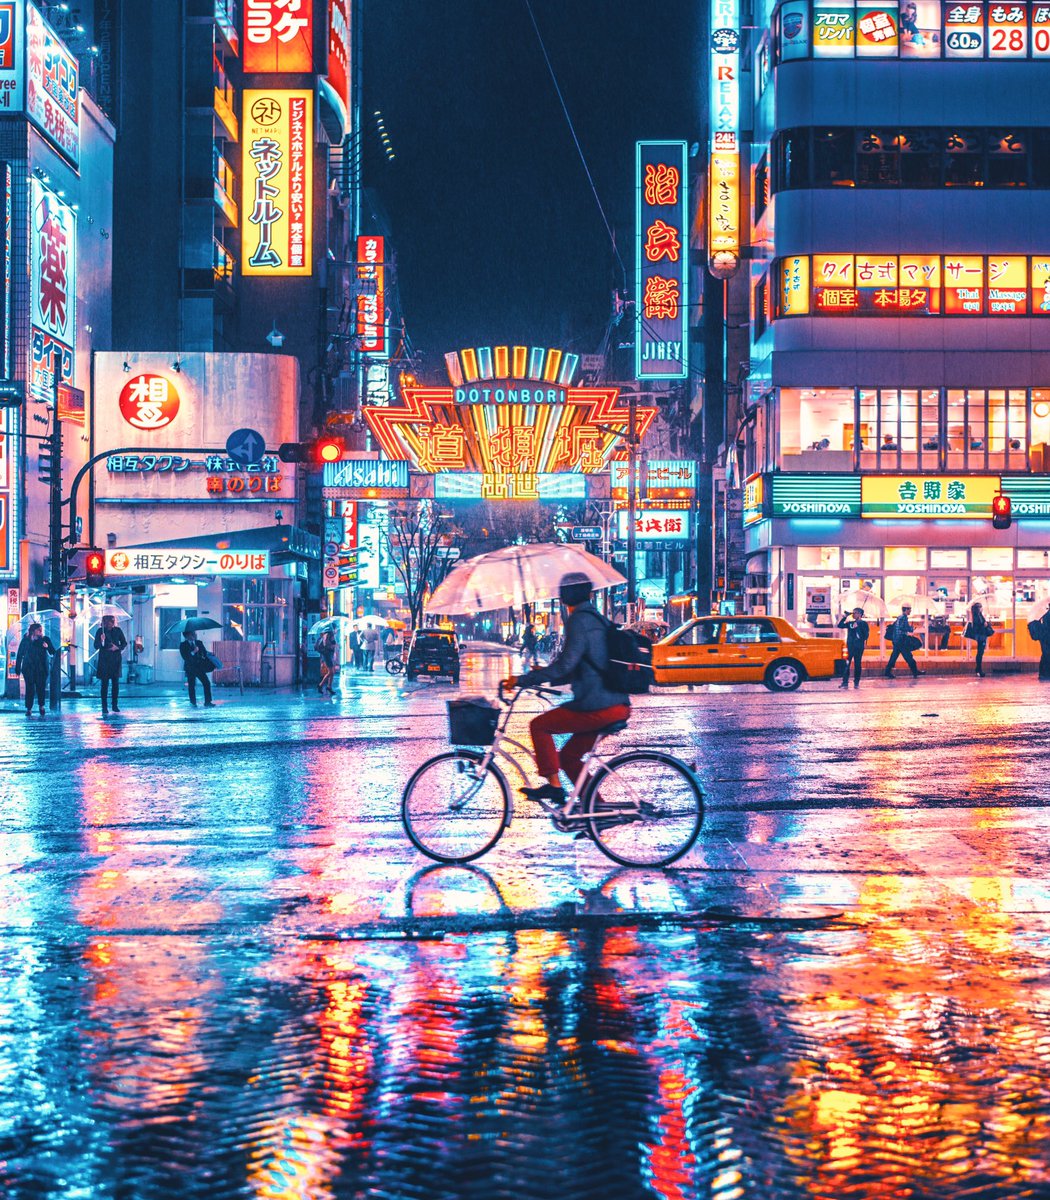 雨が降っている大阪の道頓堀の夜景が光で溢れていて綺麗だった グットピ